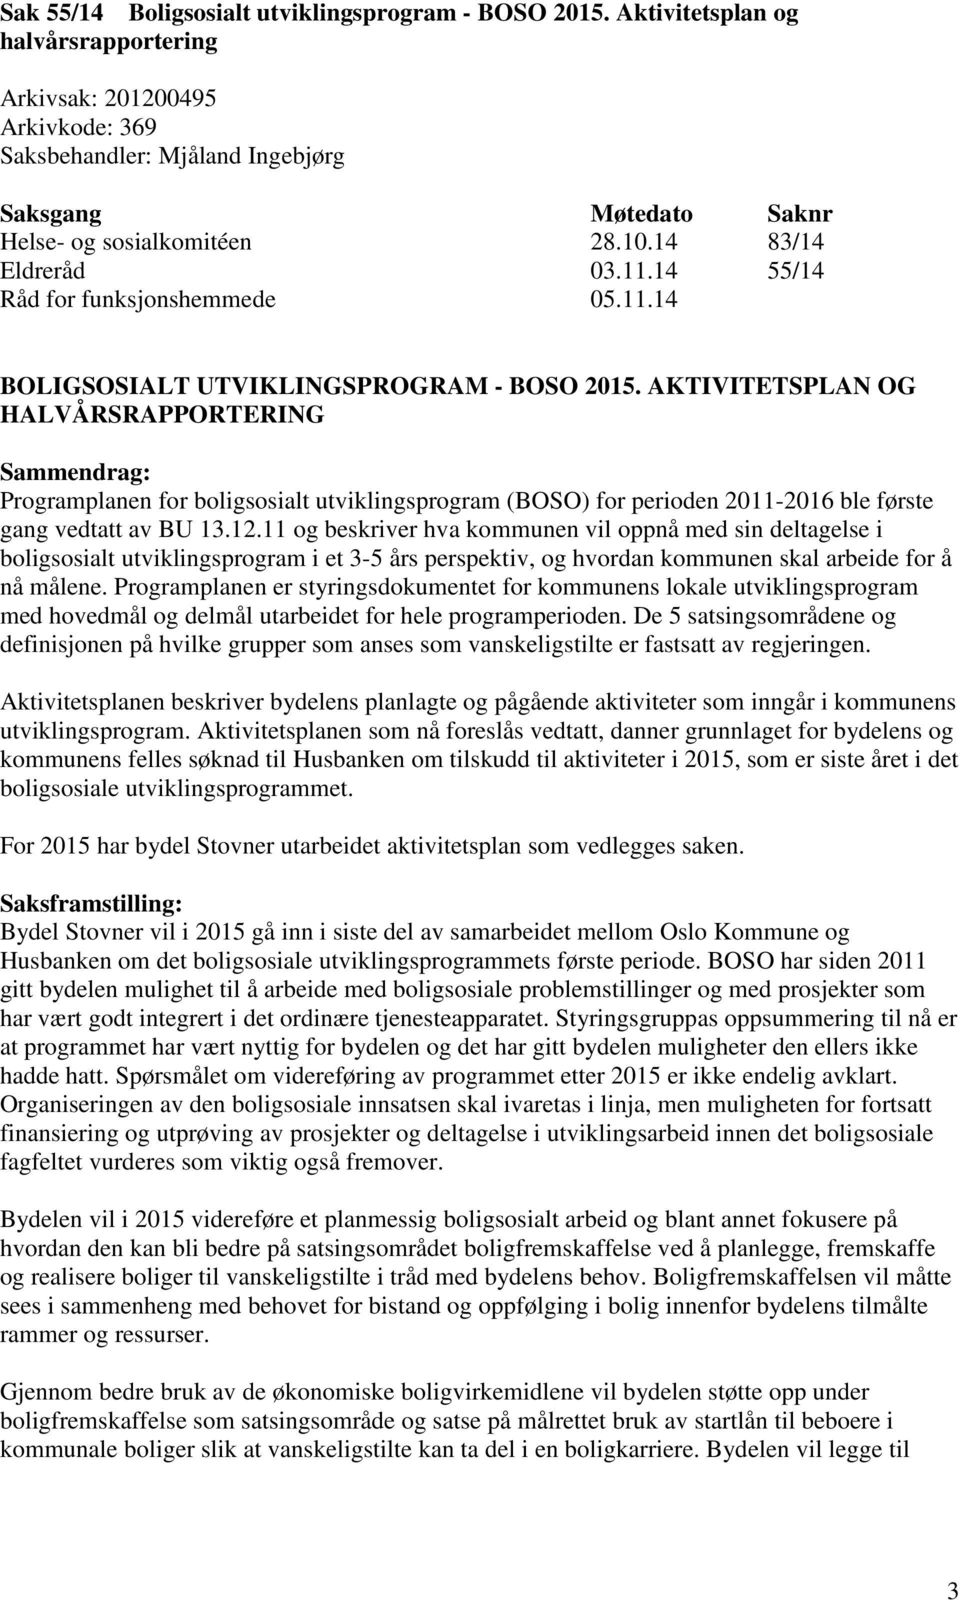 14 55/14 Råd for funksjonshemmede 05.11.14 BOLIGSOSIALT UTVIKLINGSPROGRAM - BOSO 2015.